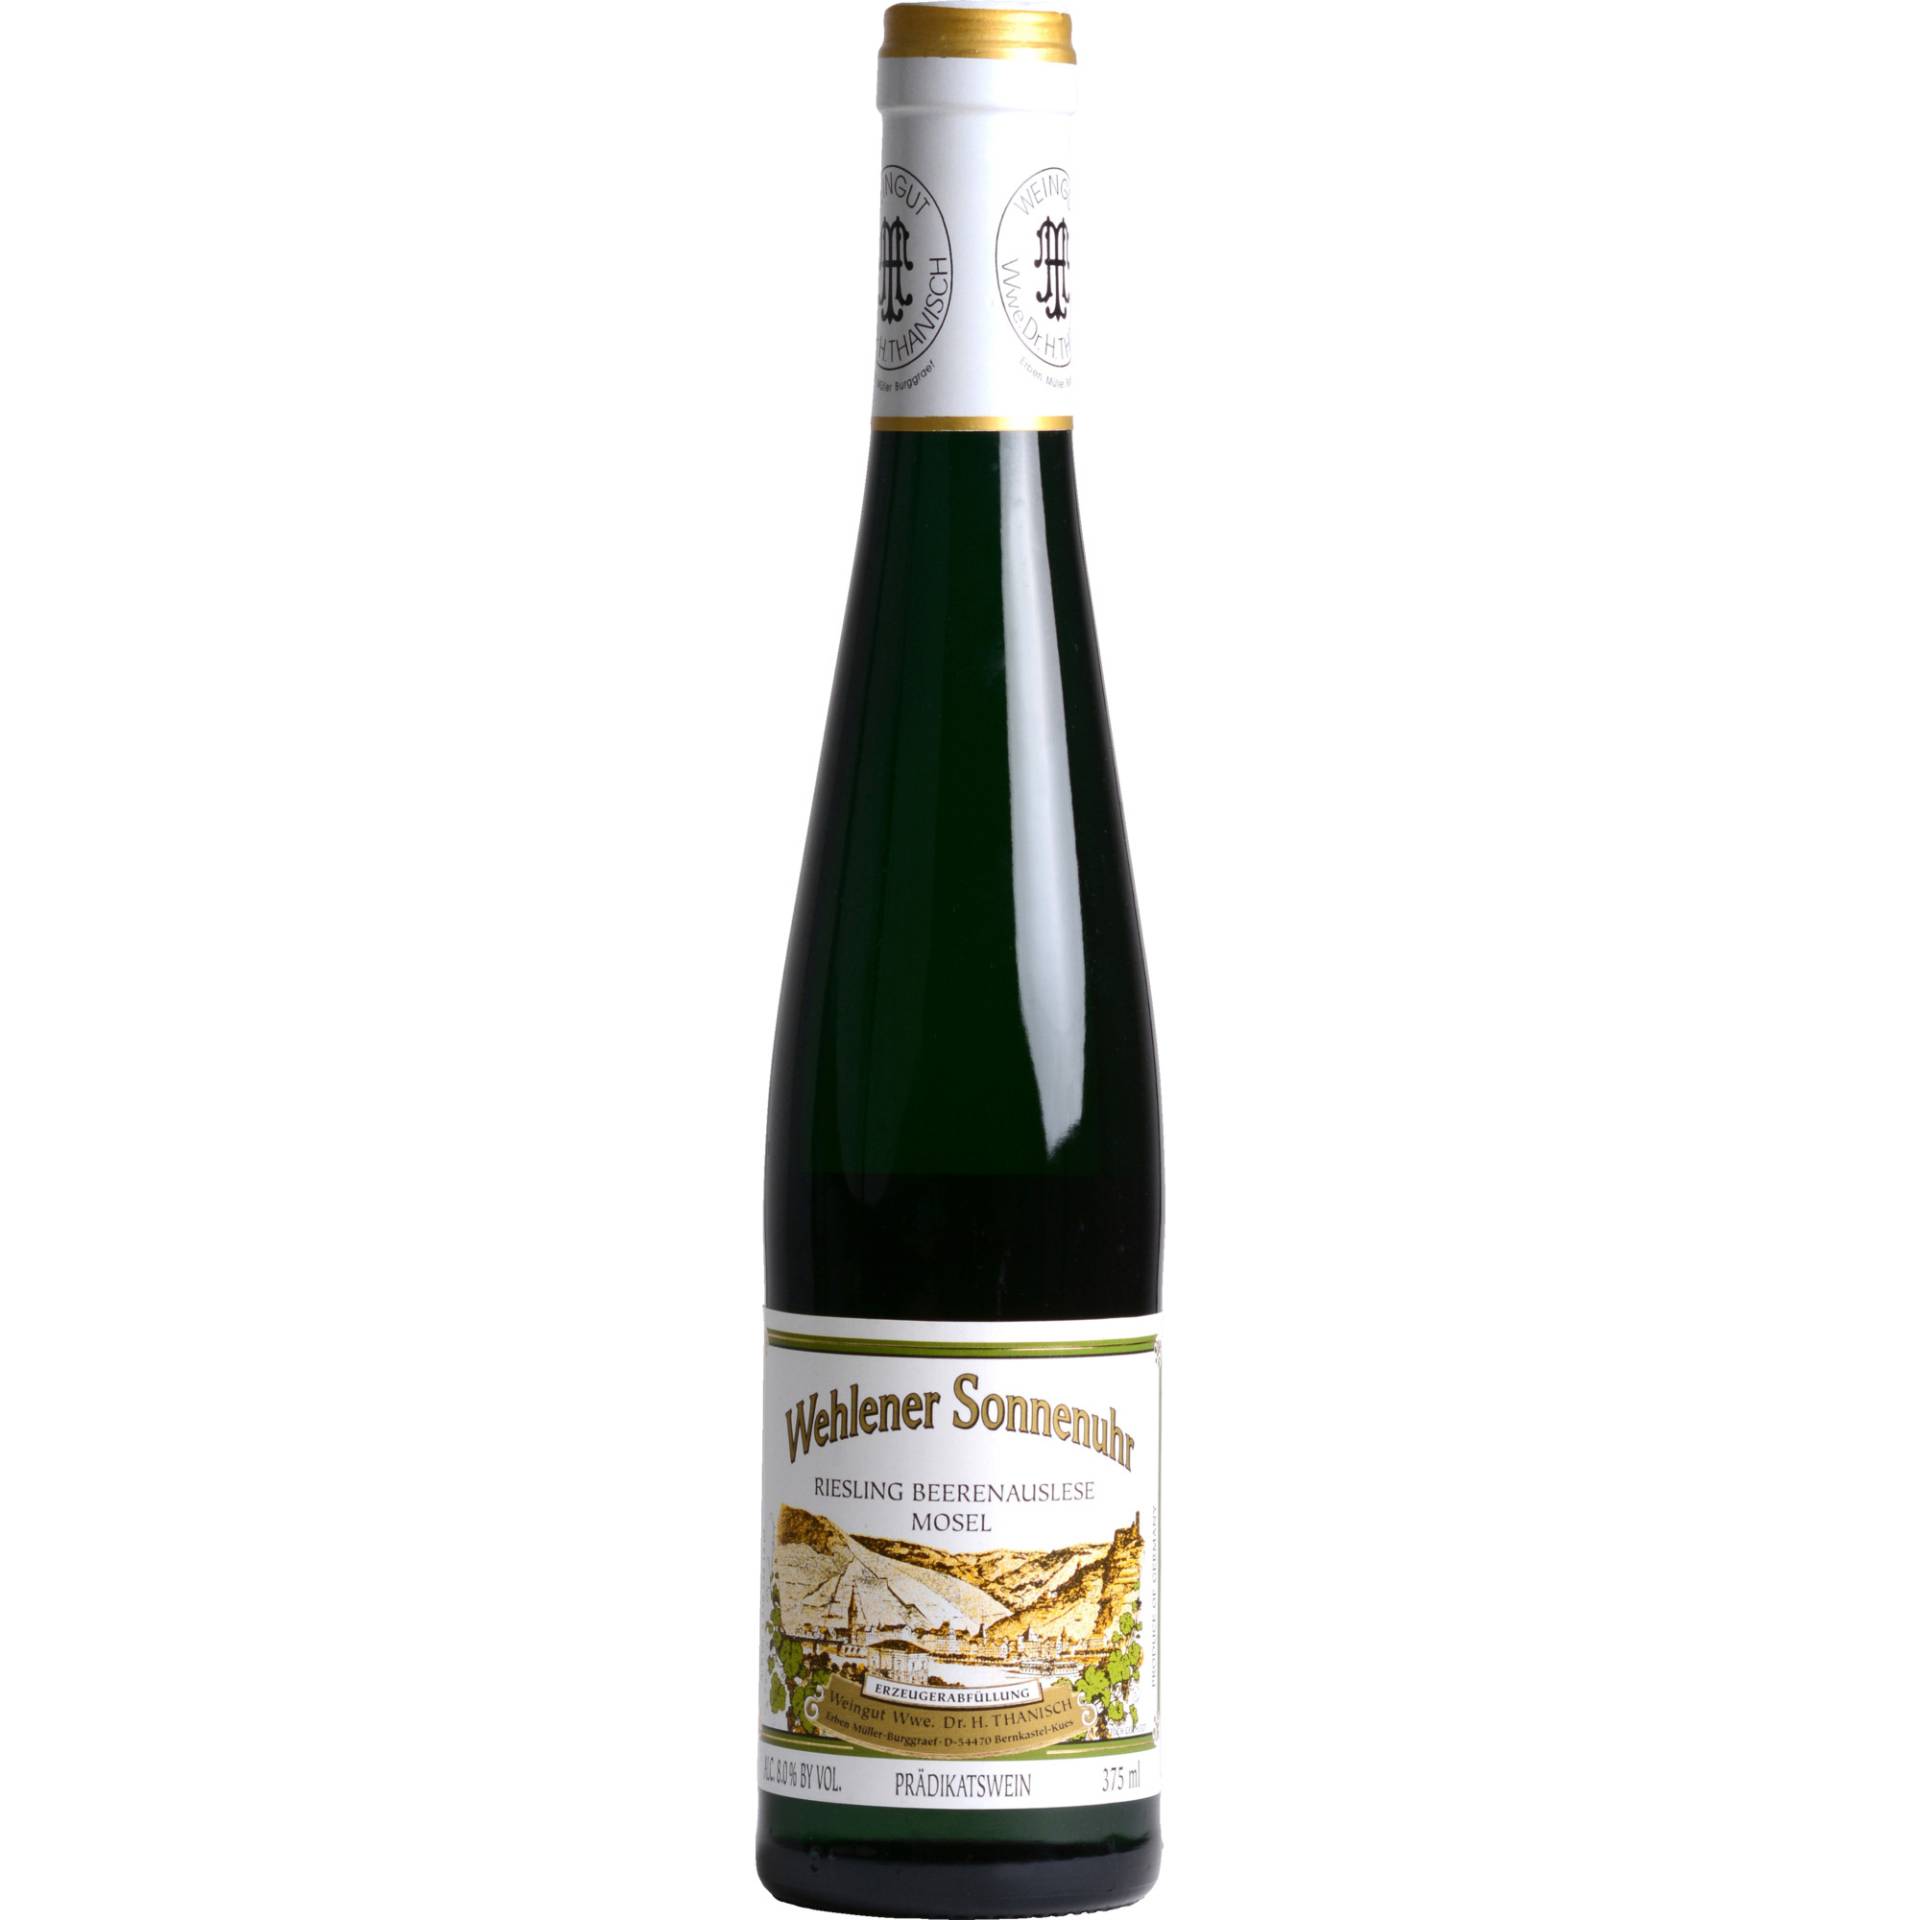 Thanisch Wehlener Sonnenuhr Beerenauslese, Edelsüß, 0,375 l, Mosel, Mosel, 2006, Weißwein von Weingut Wwe. Dr. Thanisch, Erben Thanisch, D - 54470 Bernkastel-Kues